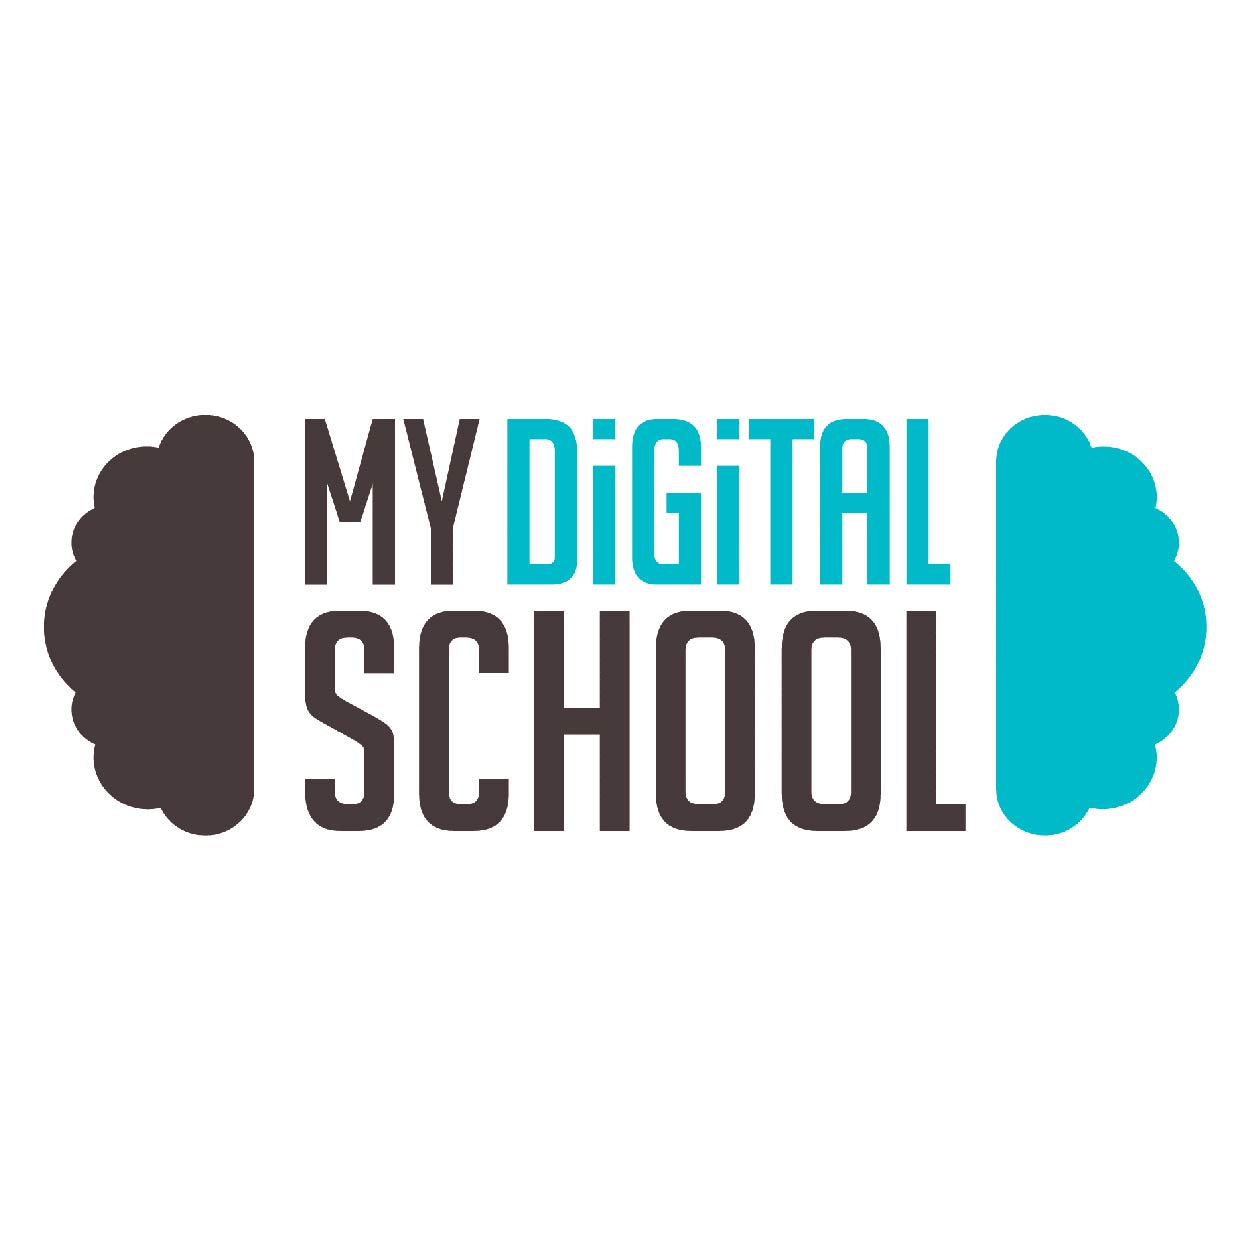 logo My Digital School